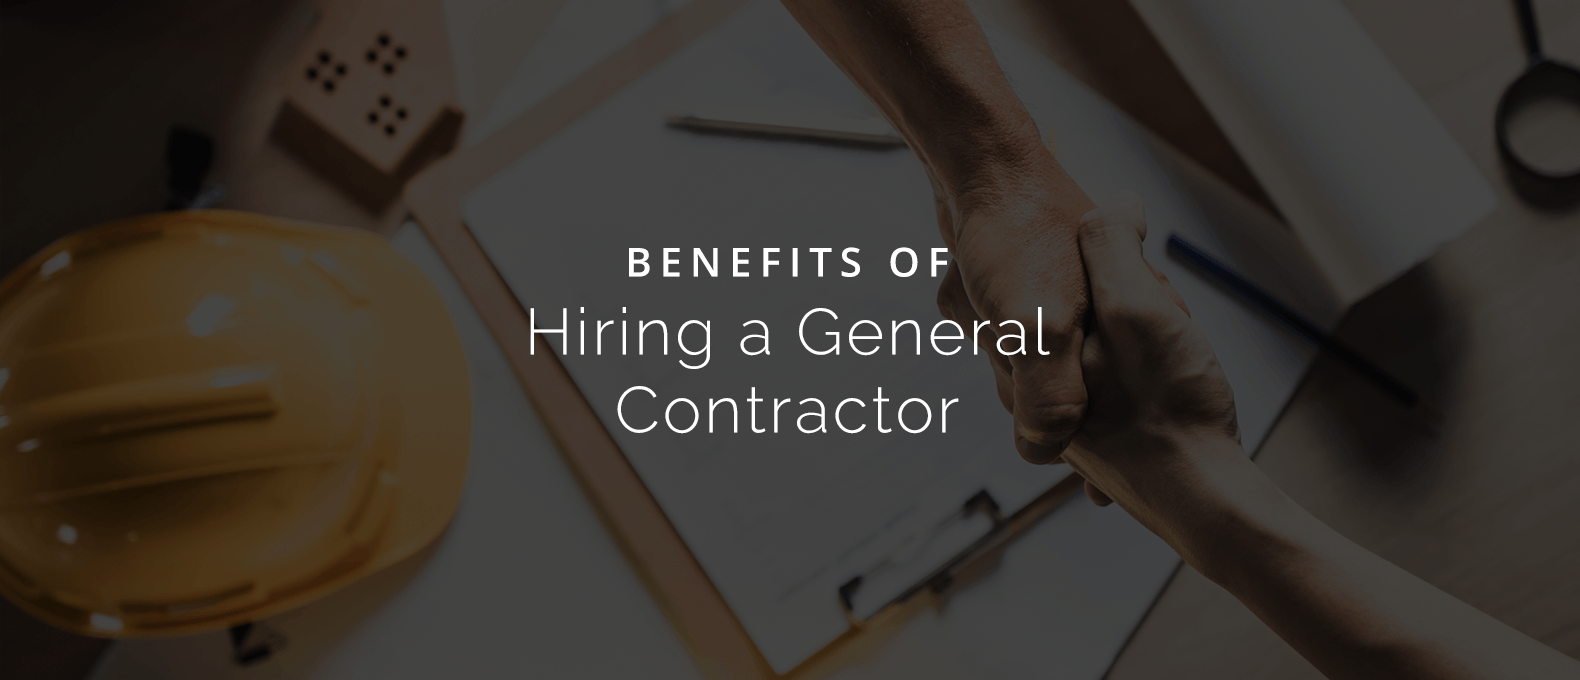 Contractor benefits